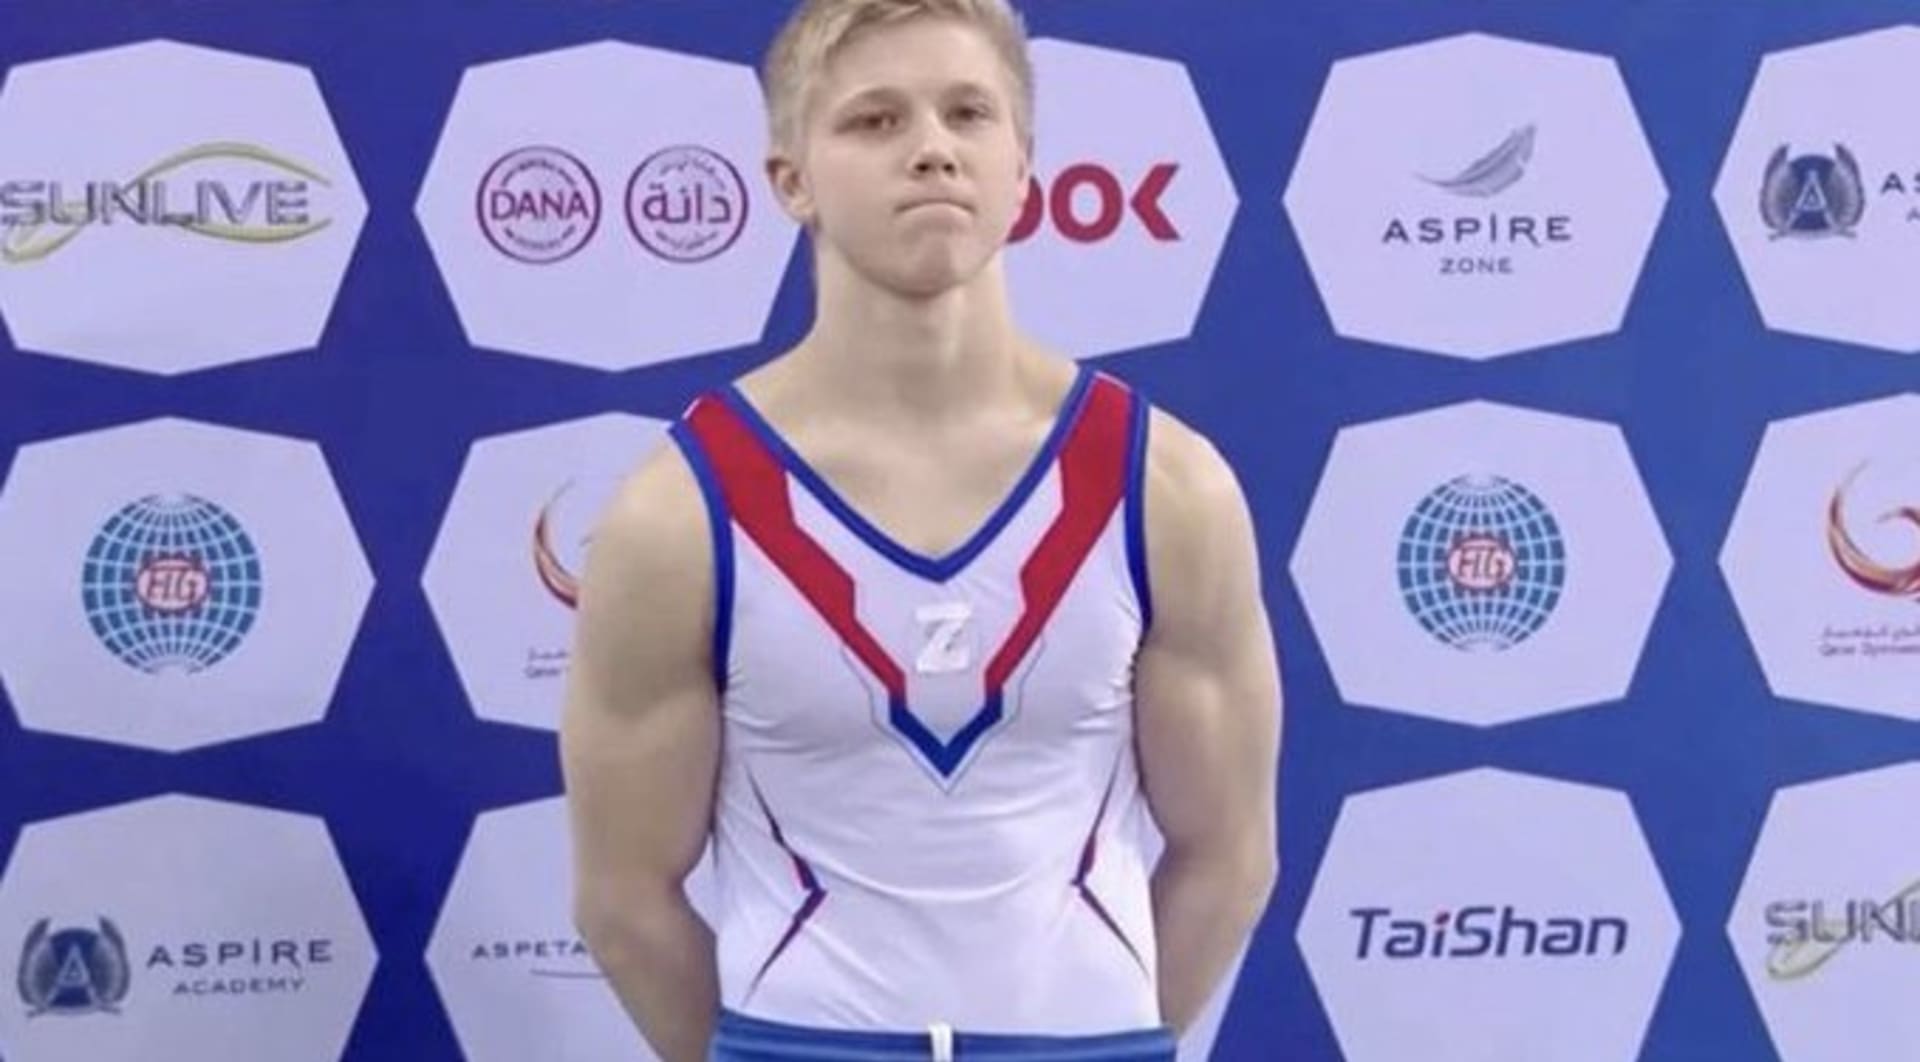 Ruský gymnasta s nenávistným symbolem ničeho nelituje 1